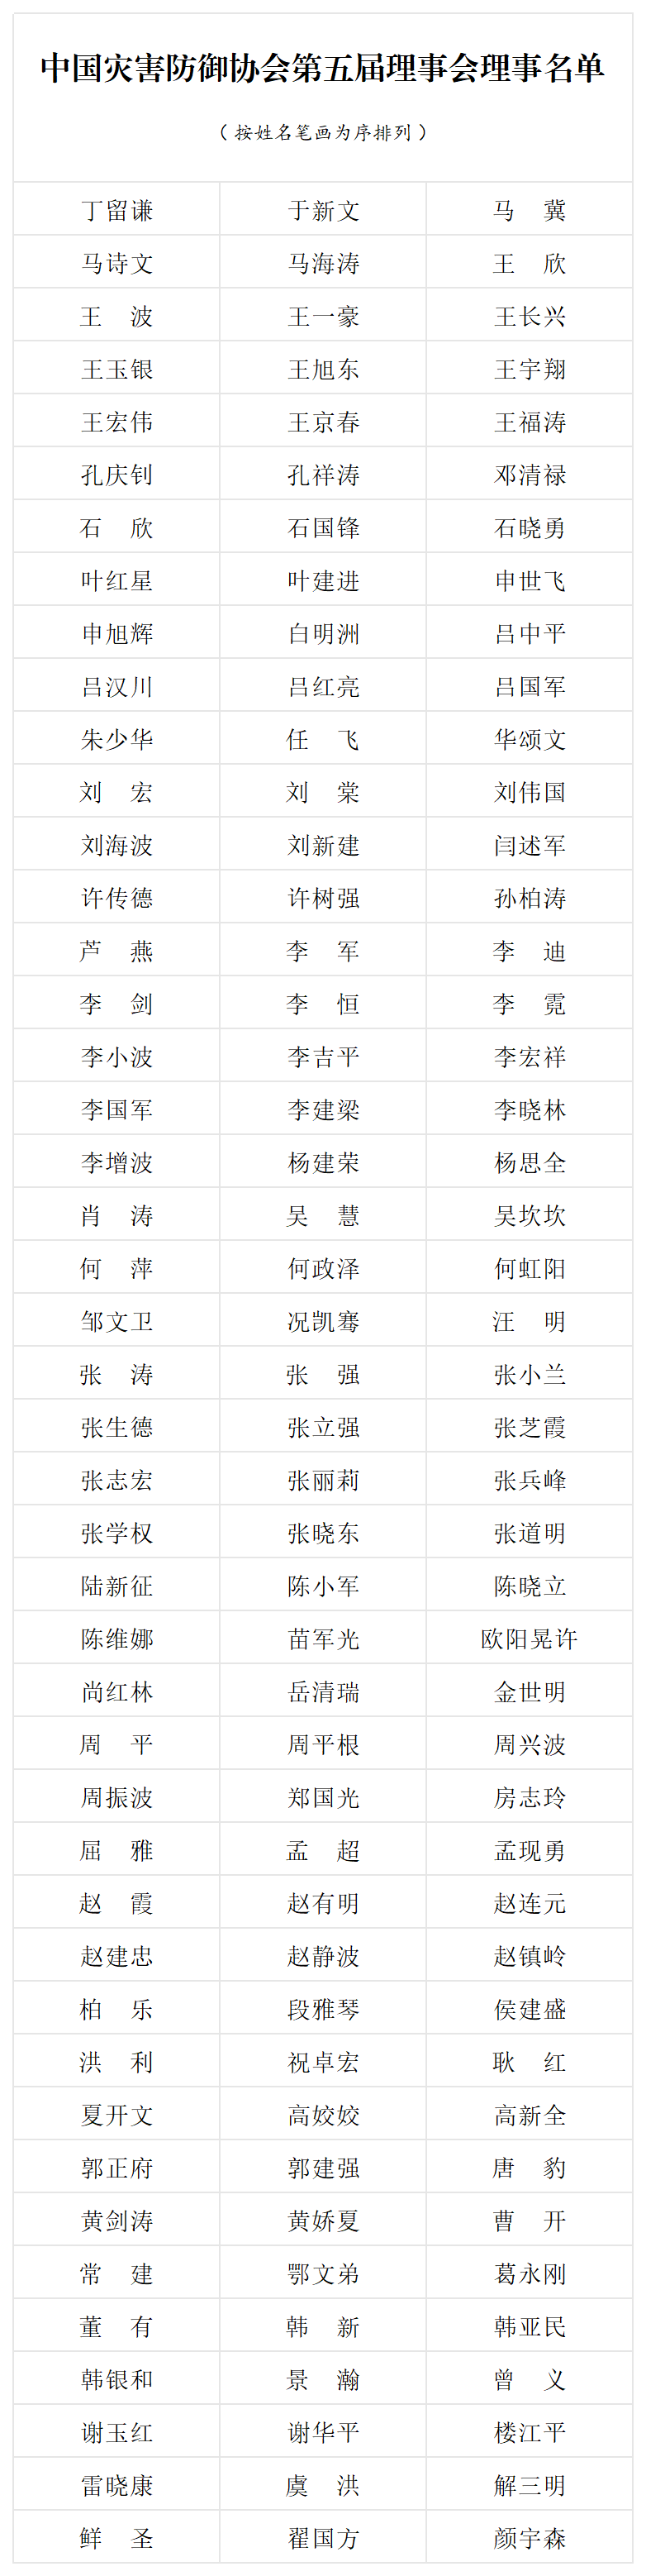 中国灾害防御协会第五届理事会理事名单_名单表.png